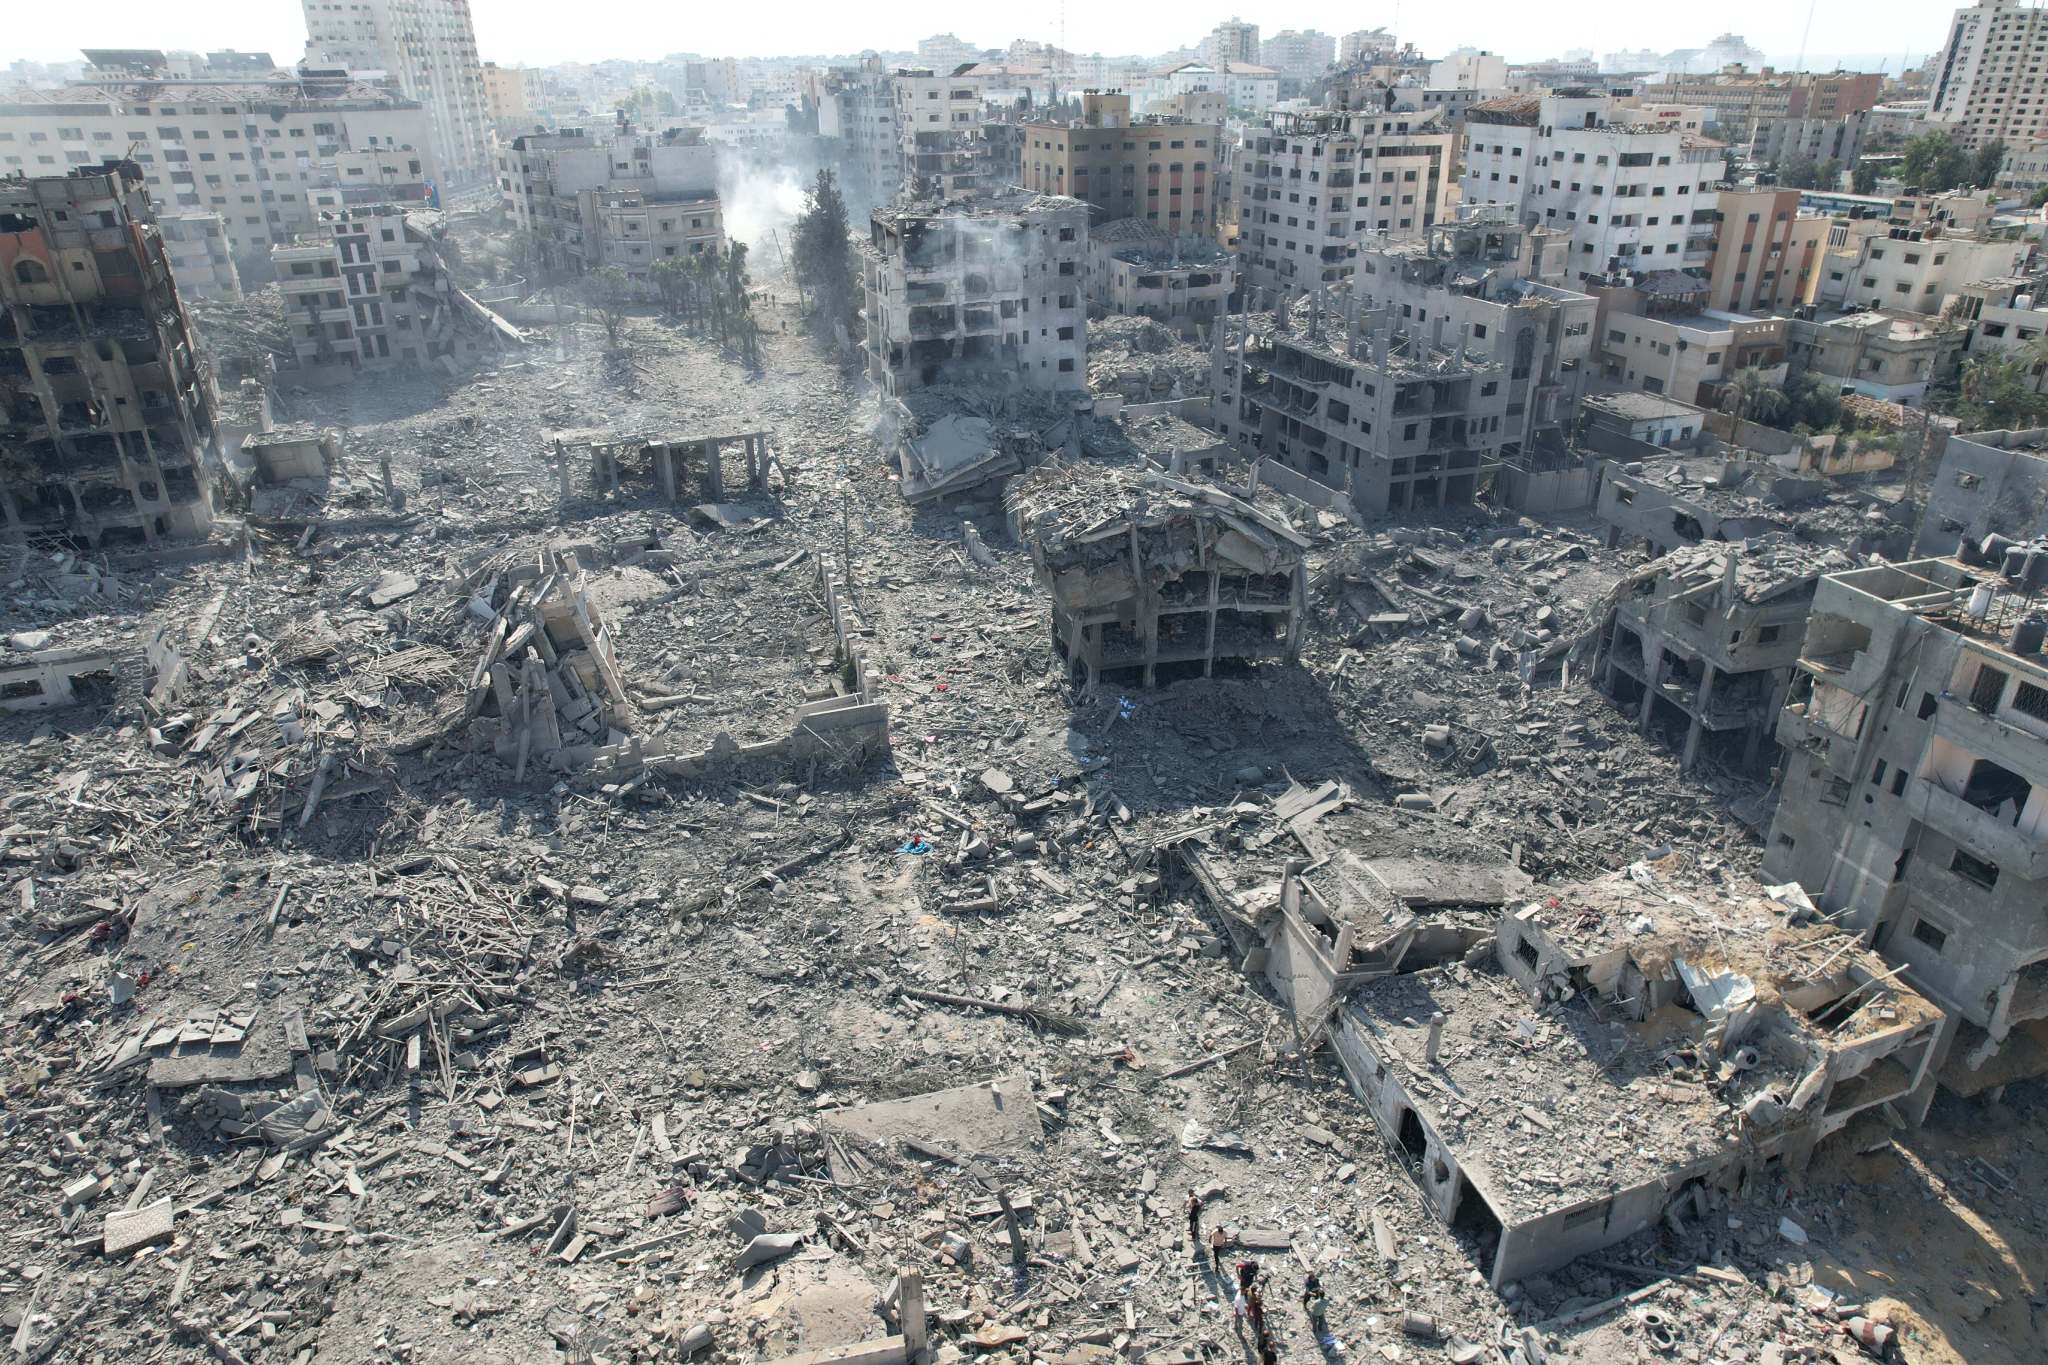 以色列空袭加沙地带九人死亡 - Mandarinian